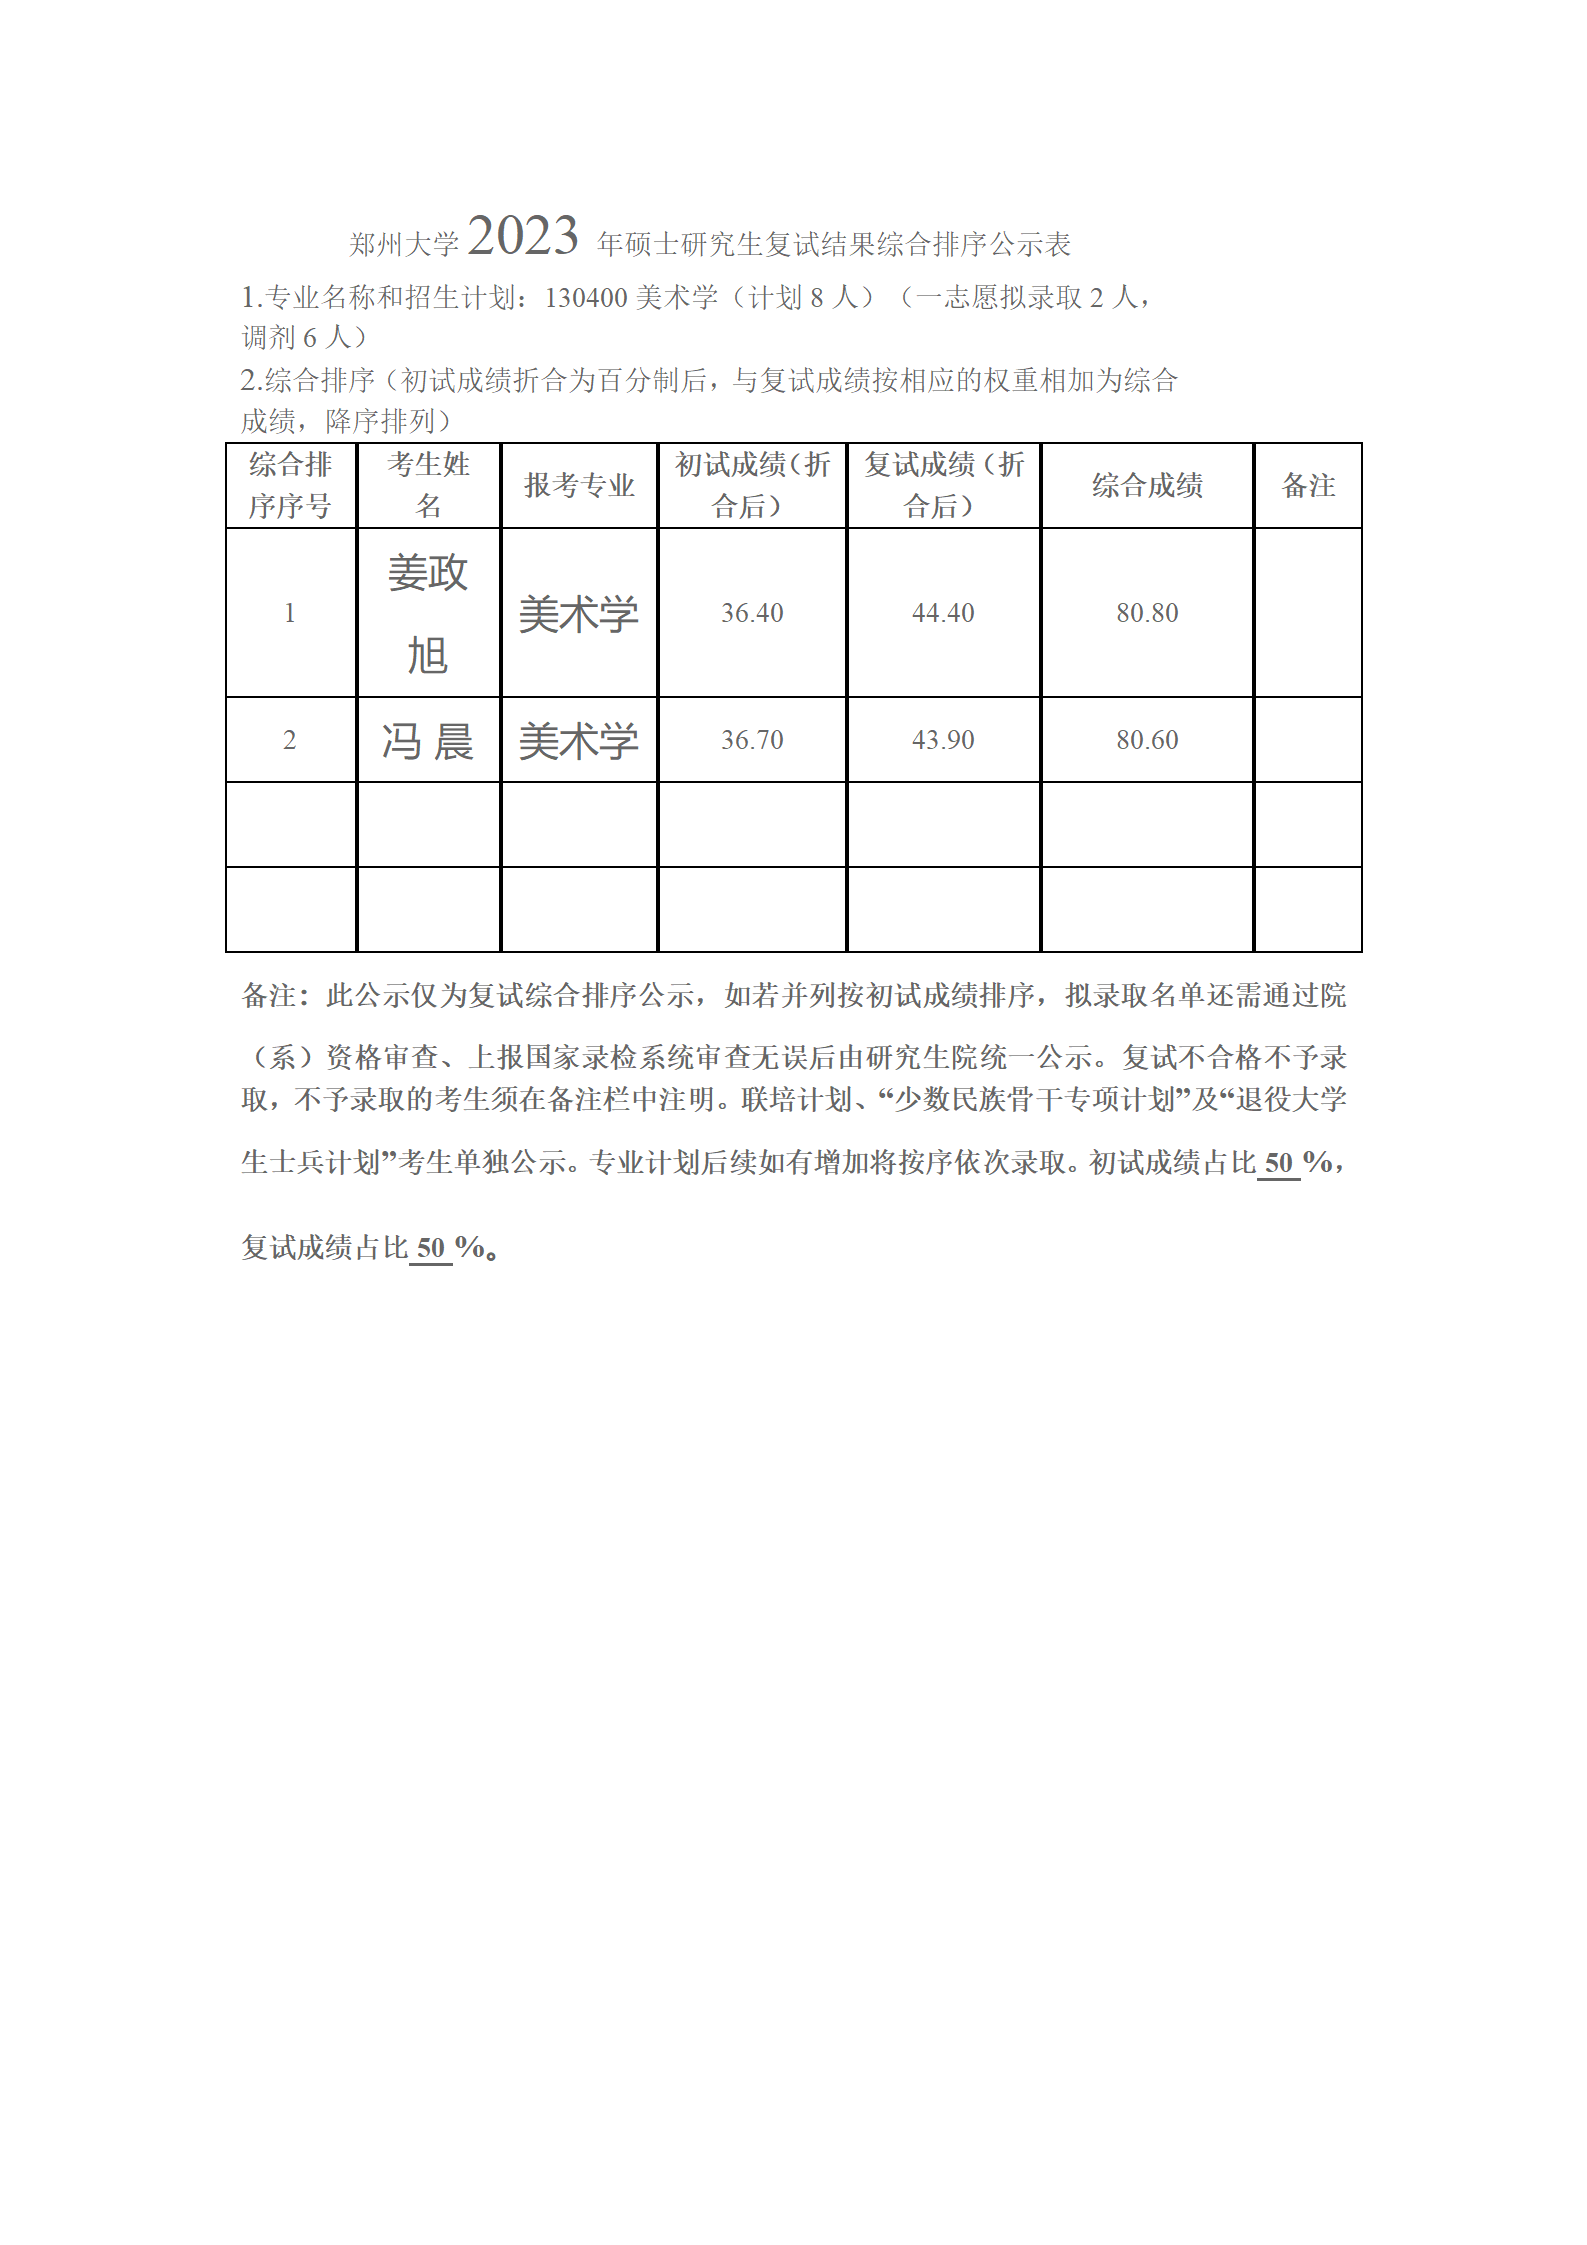 郑州大学2023年硕士研究生复试结果综合排序公示表（学硕）_01.png